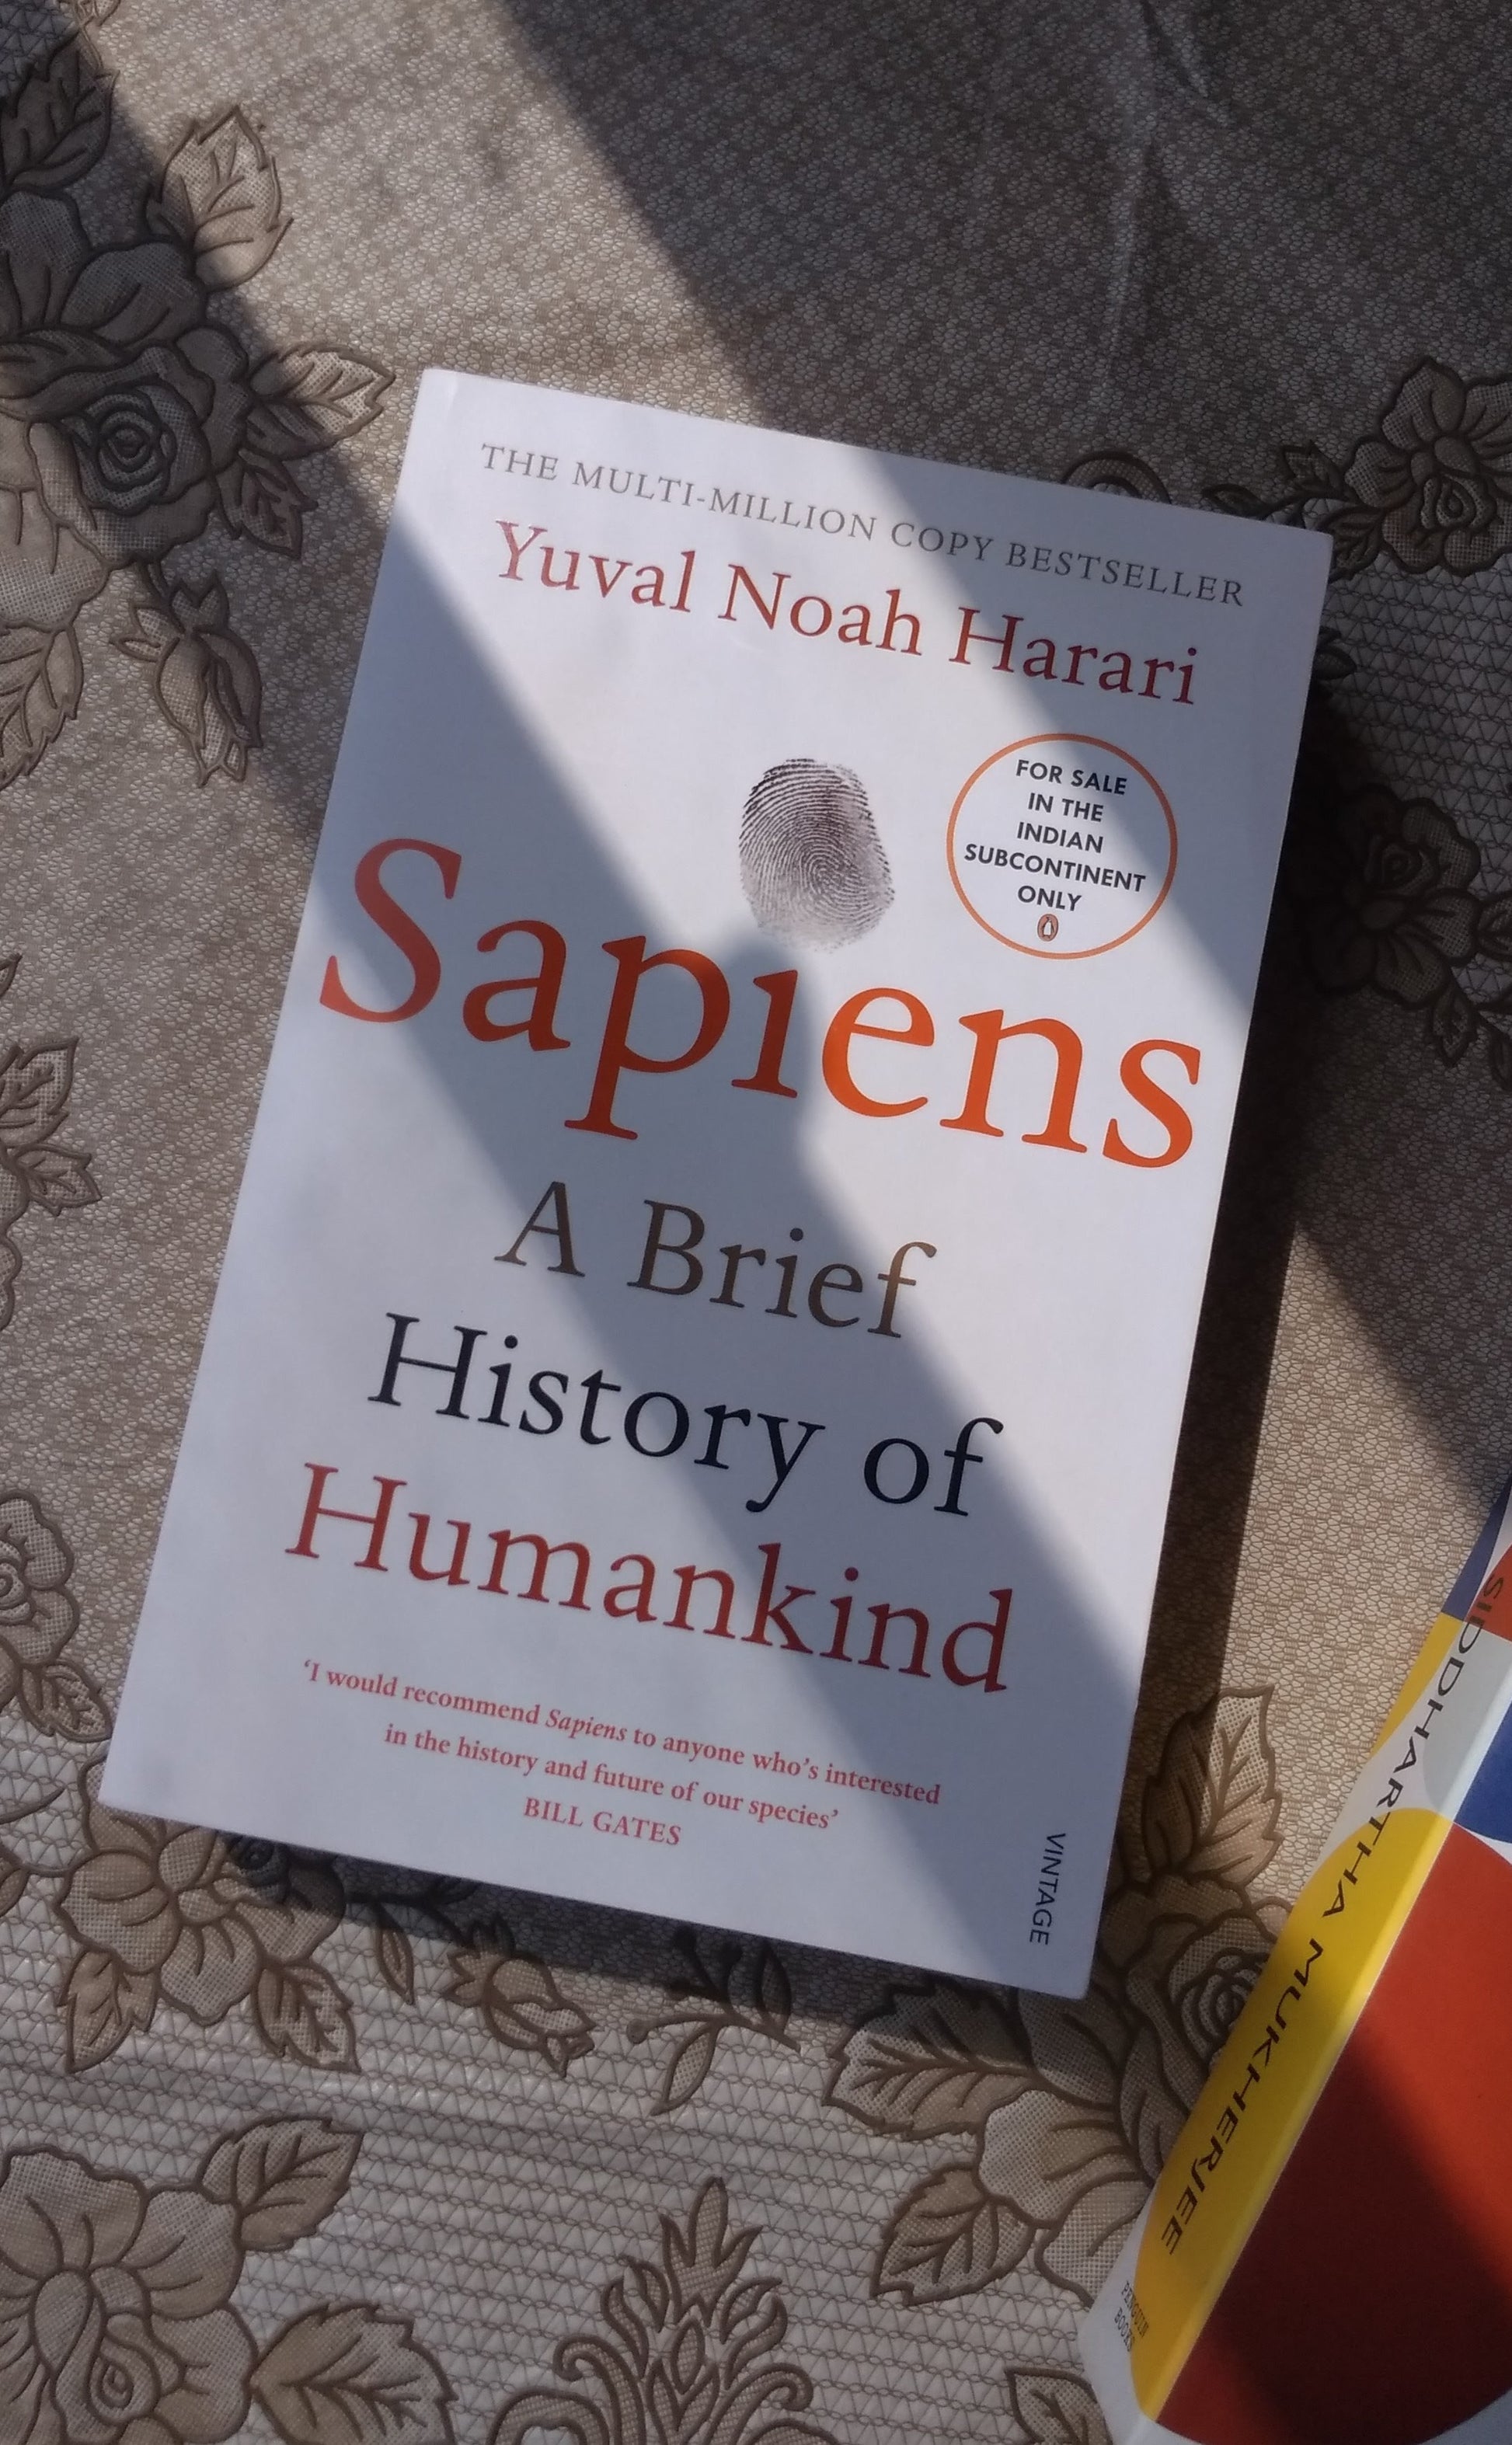 Sapiens by Yuval Noah Harari at BIBLIONEPAL Bookstore